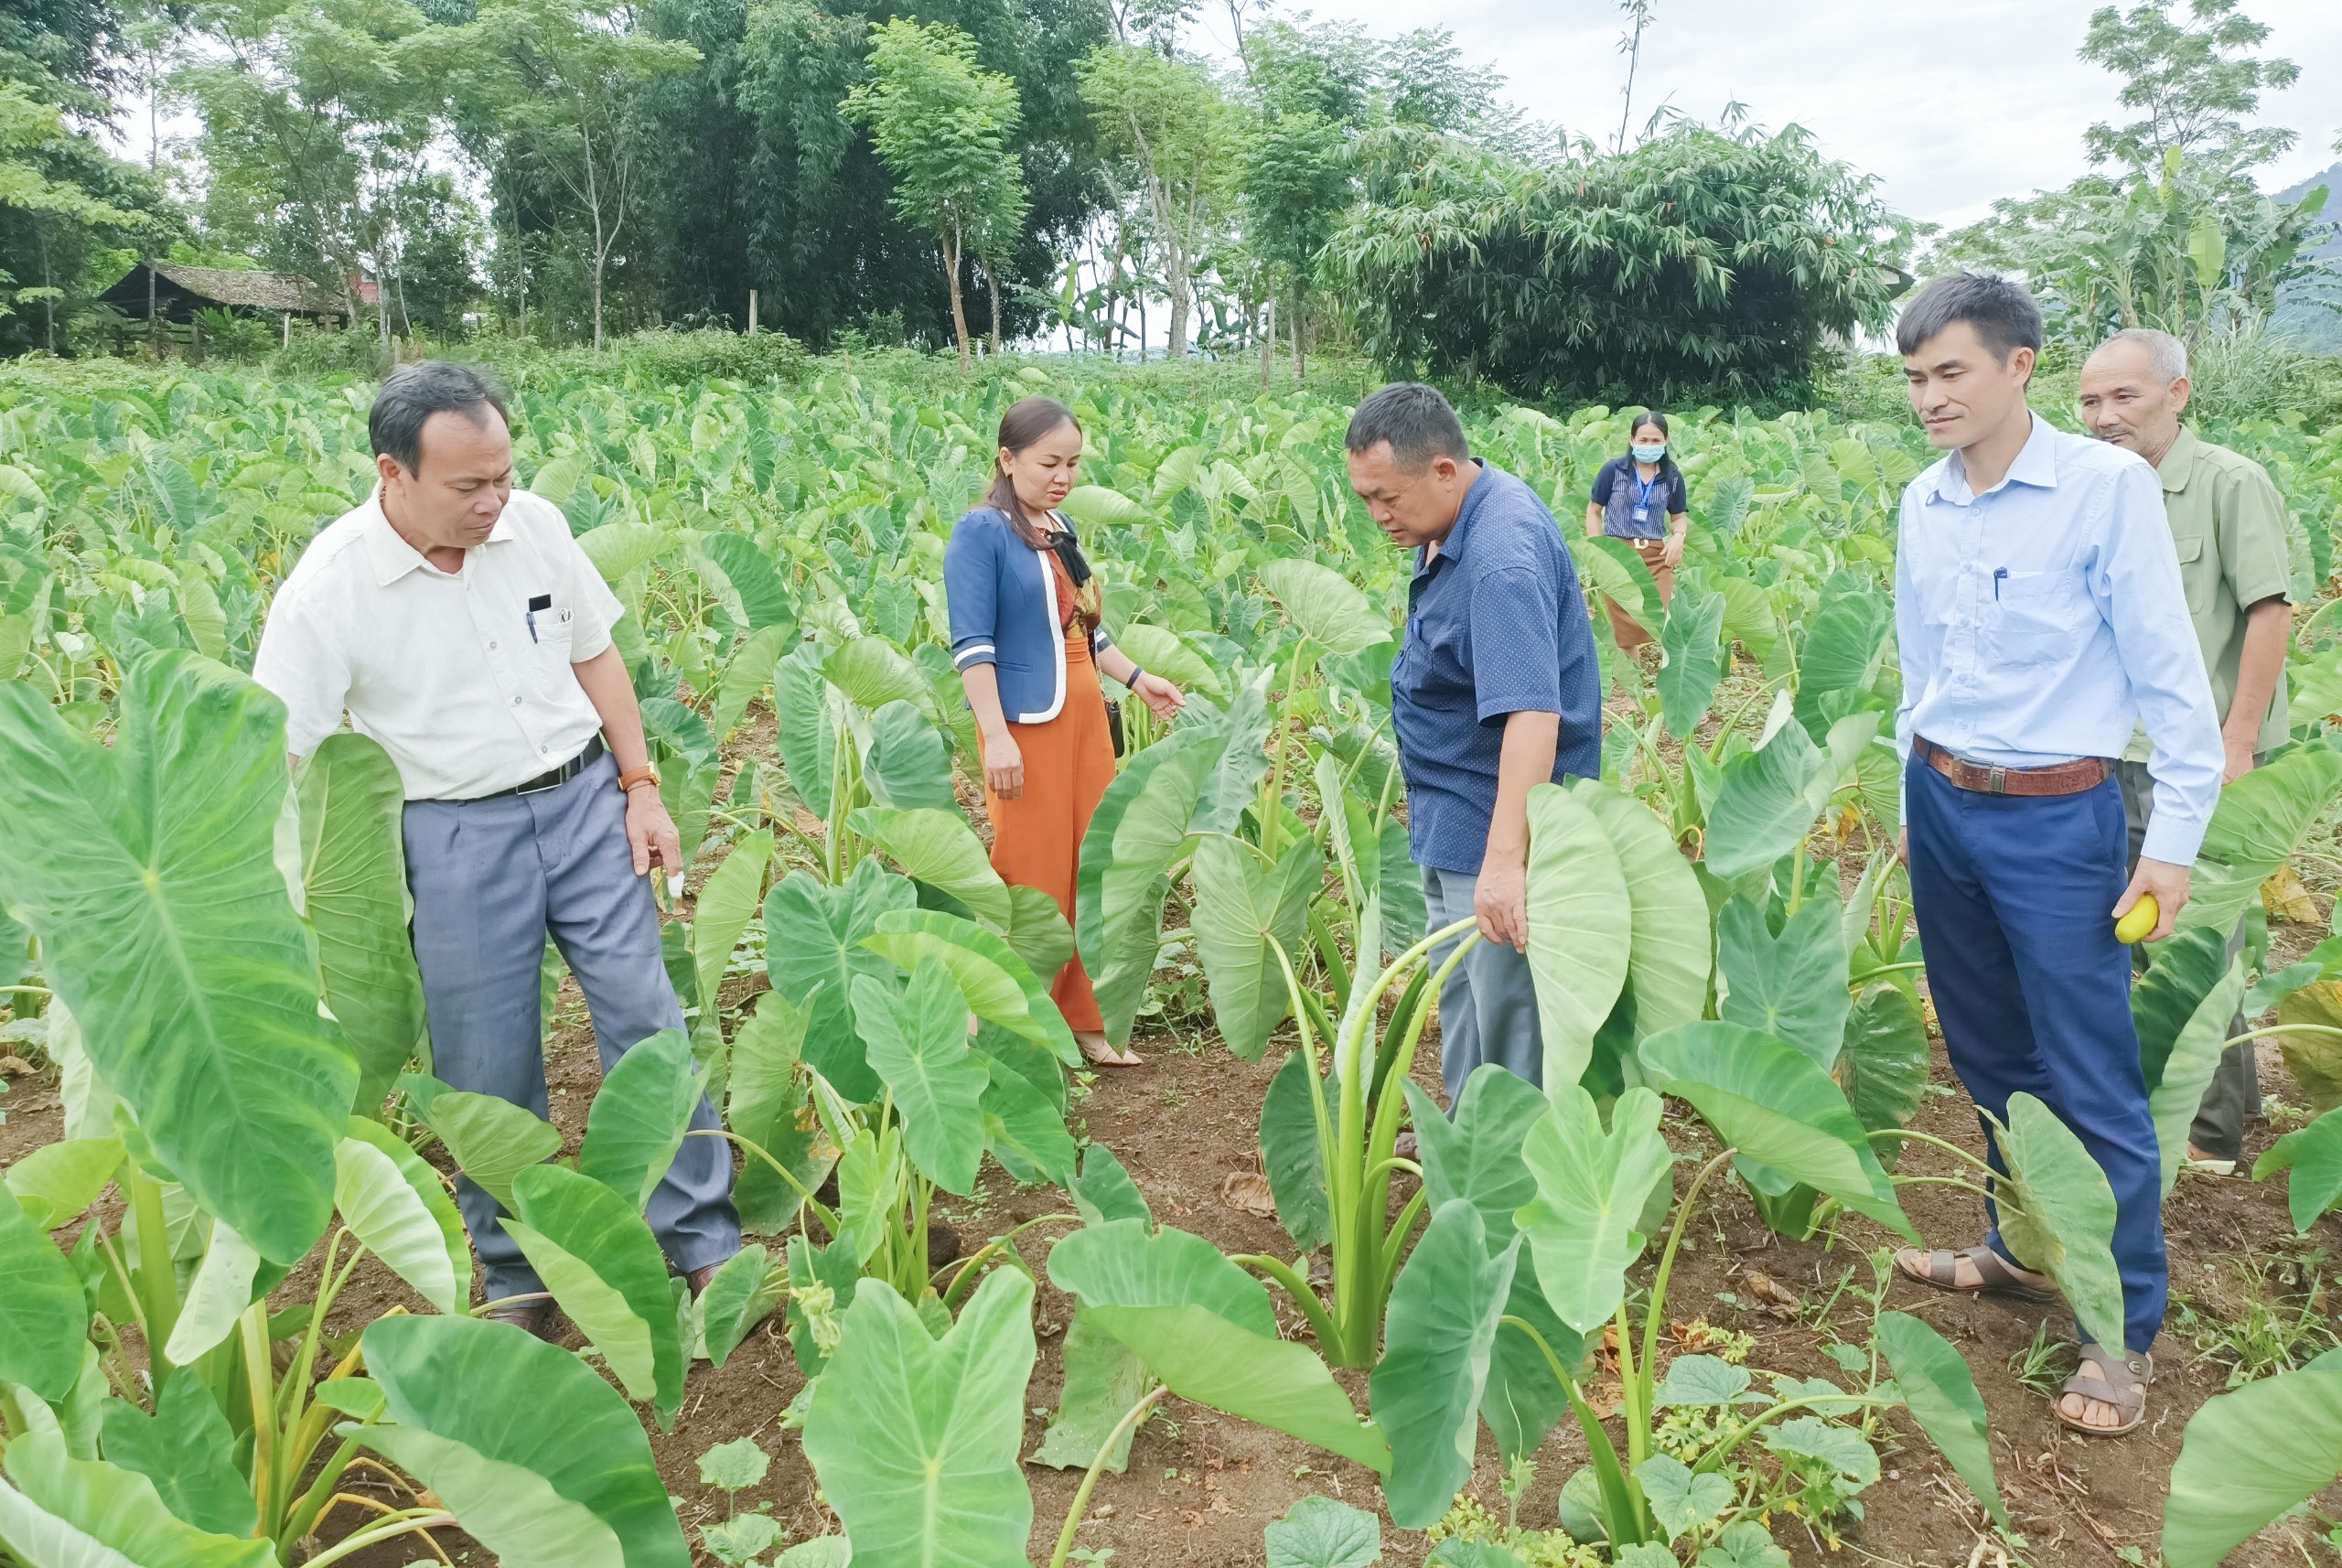 bna_ MHThông qua %22dân vận khéo%22 cải tạo vươn tạp, trồng cây khoai sọ đeml lại hiệu quả tại xã Nậm Giải, huyện Quế Phong.jpg